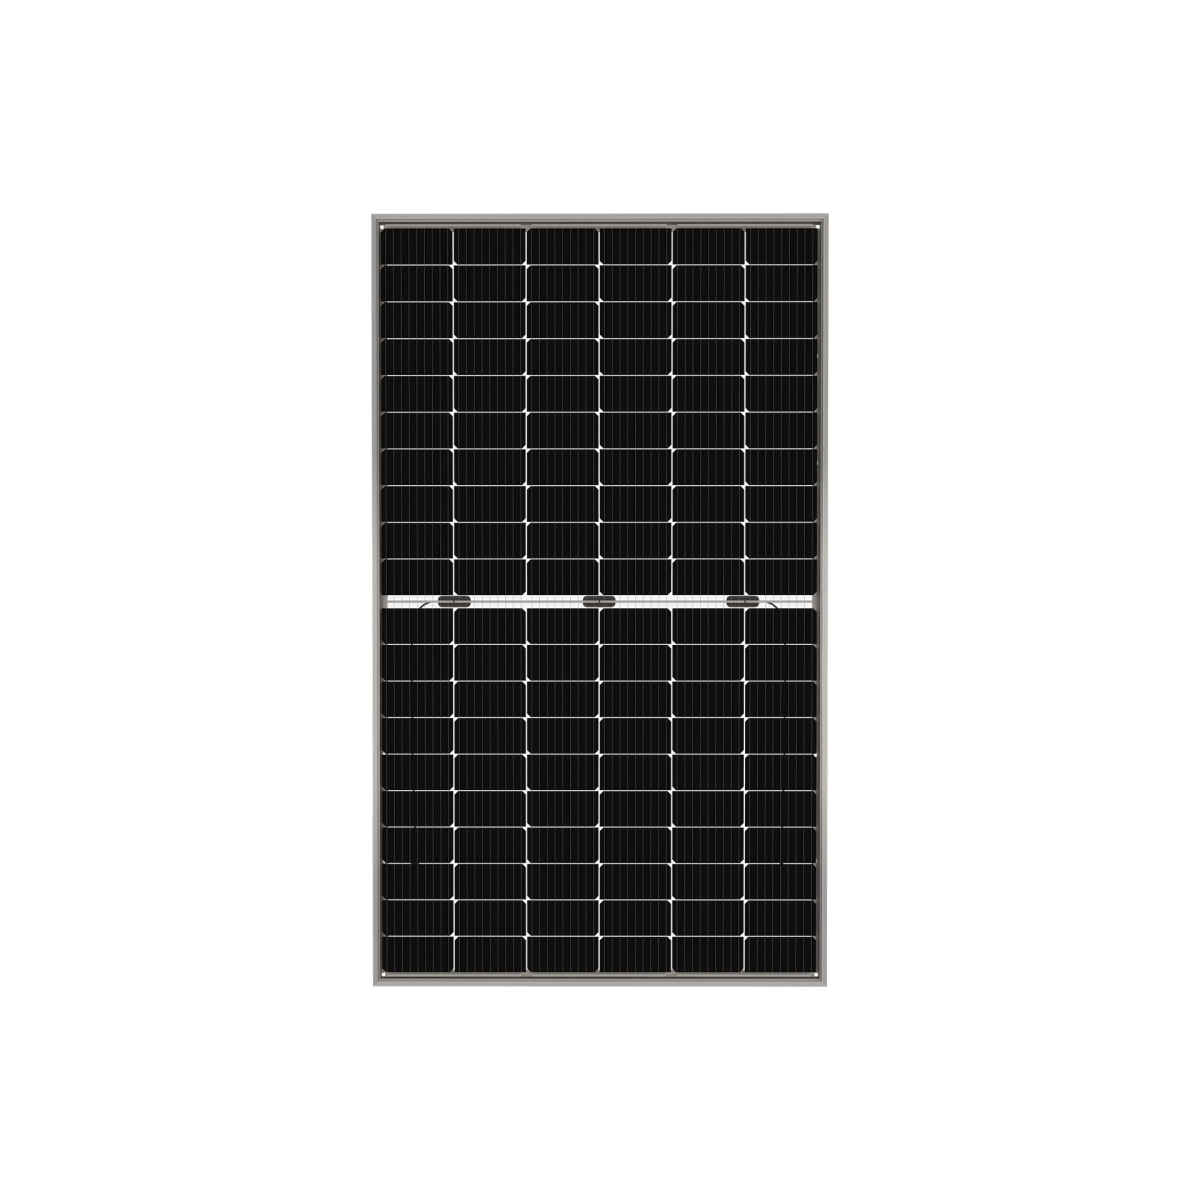 TommaTech 370Wp M6 120PM Cells Bifacial Half-Cut MB Solar Panel